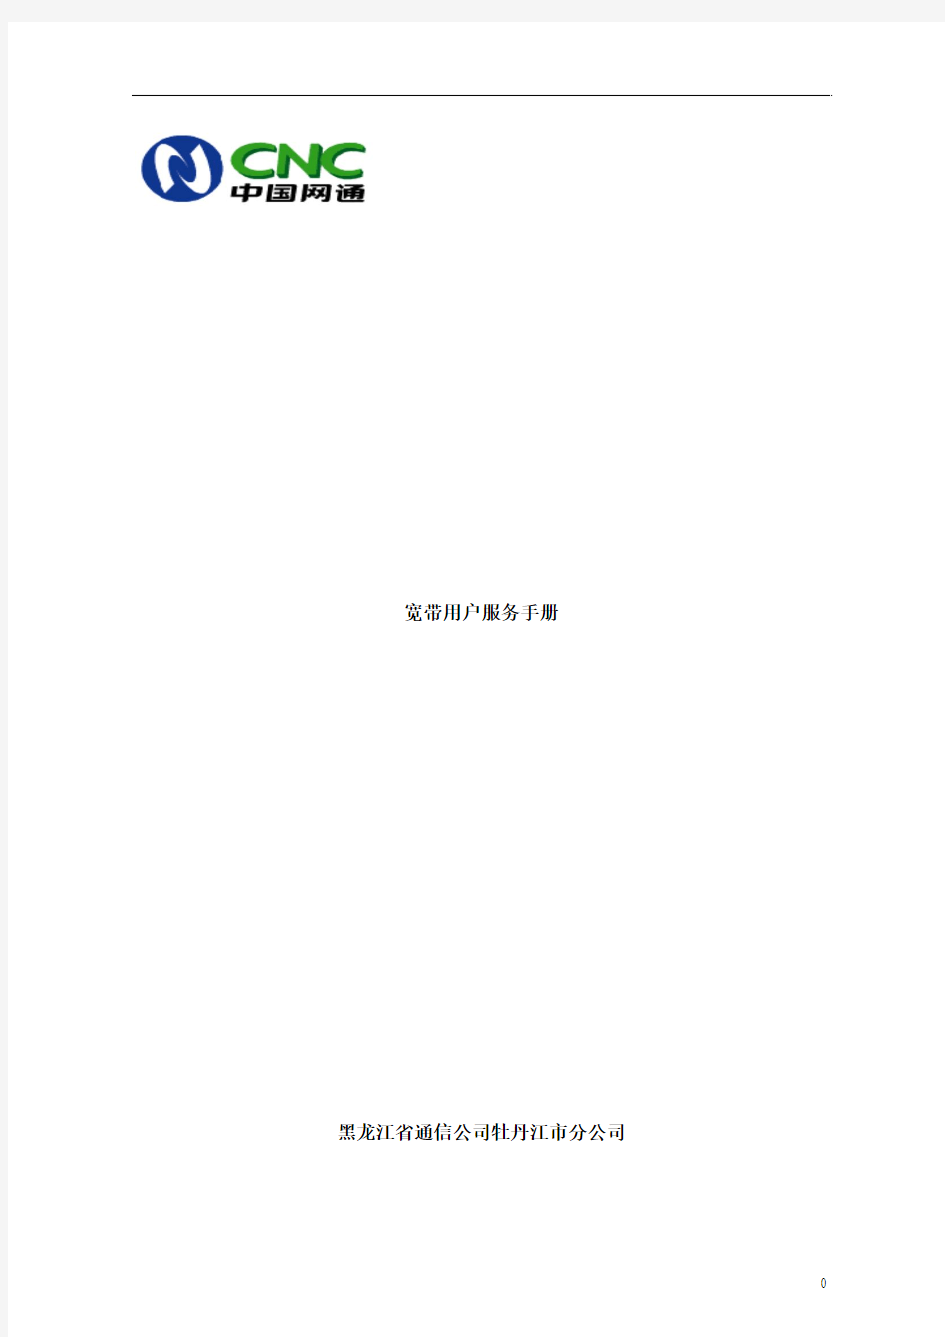 (中国网通)宽带用户服务手册